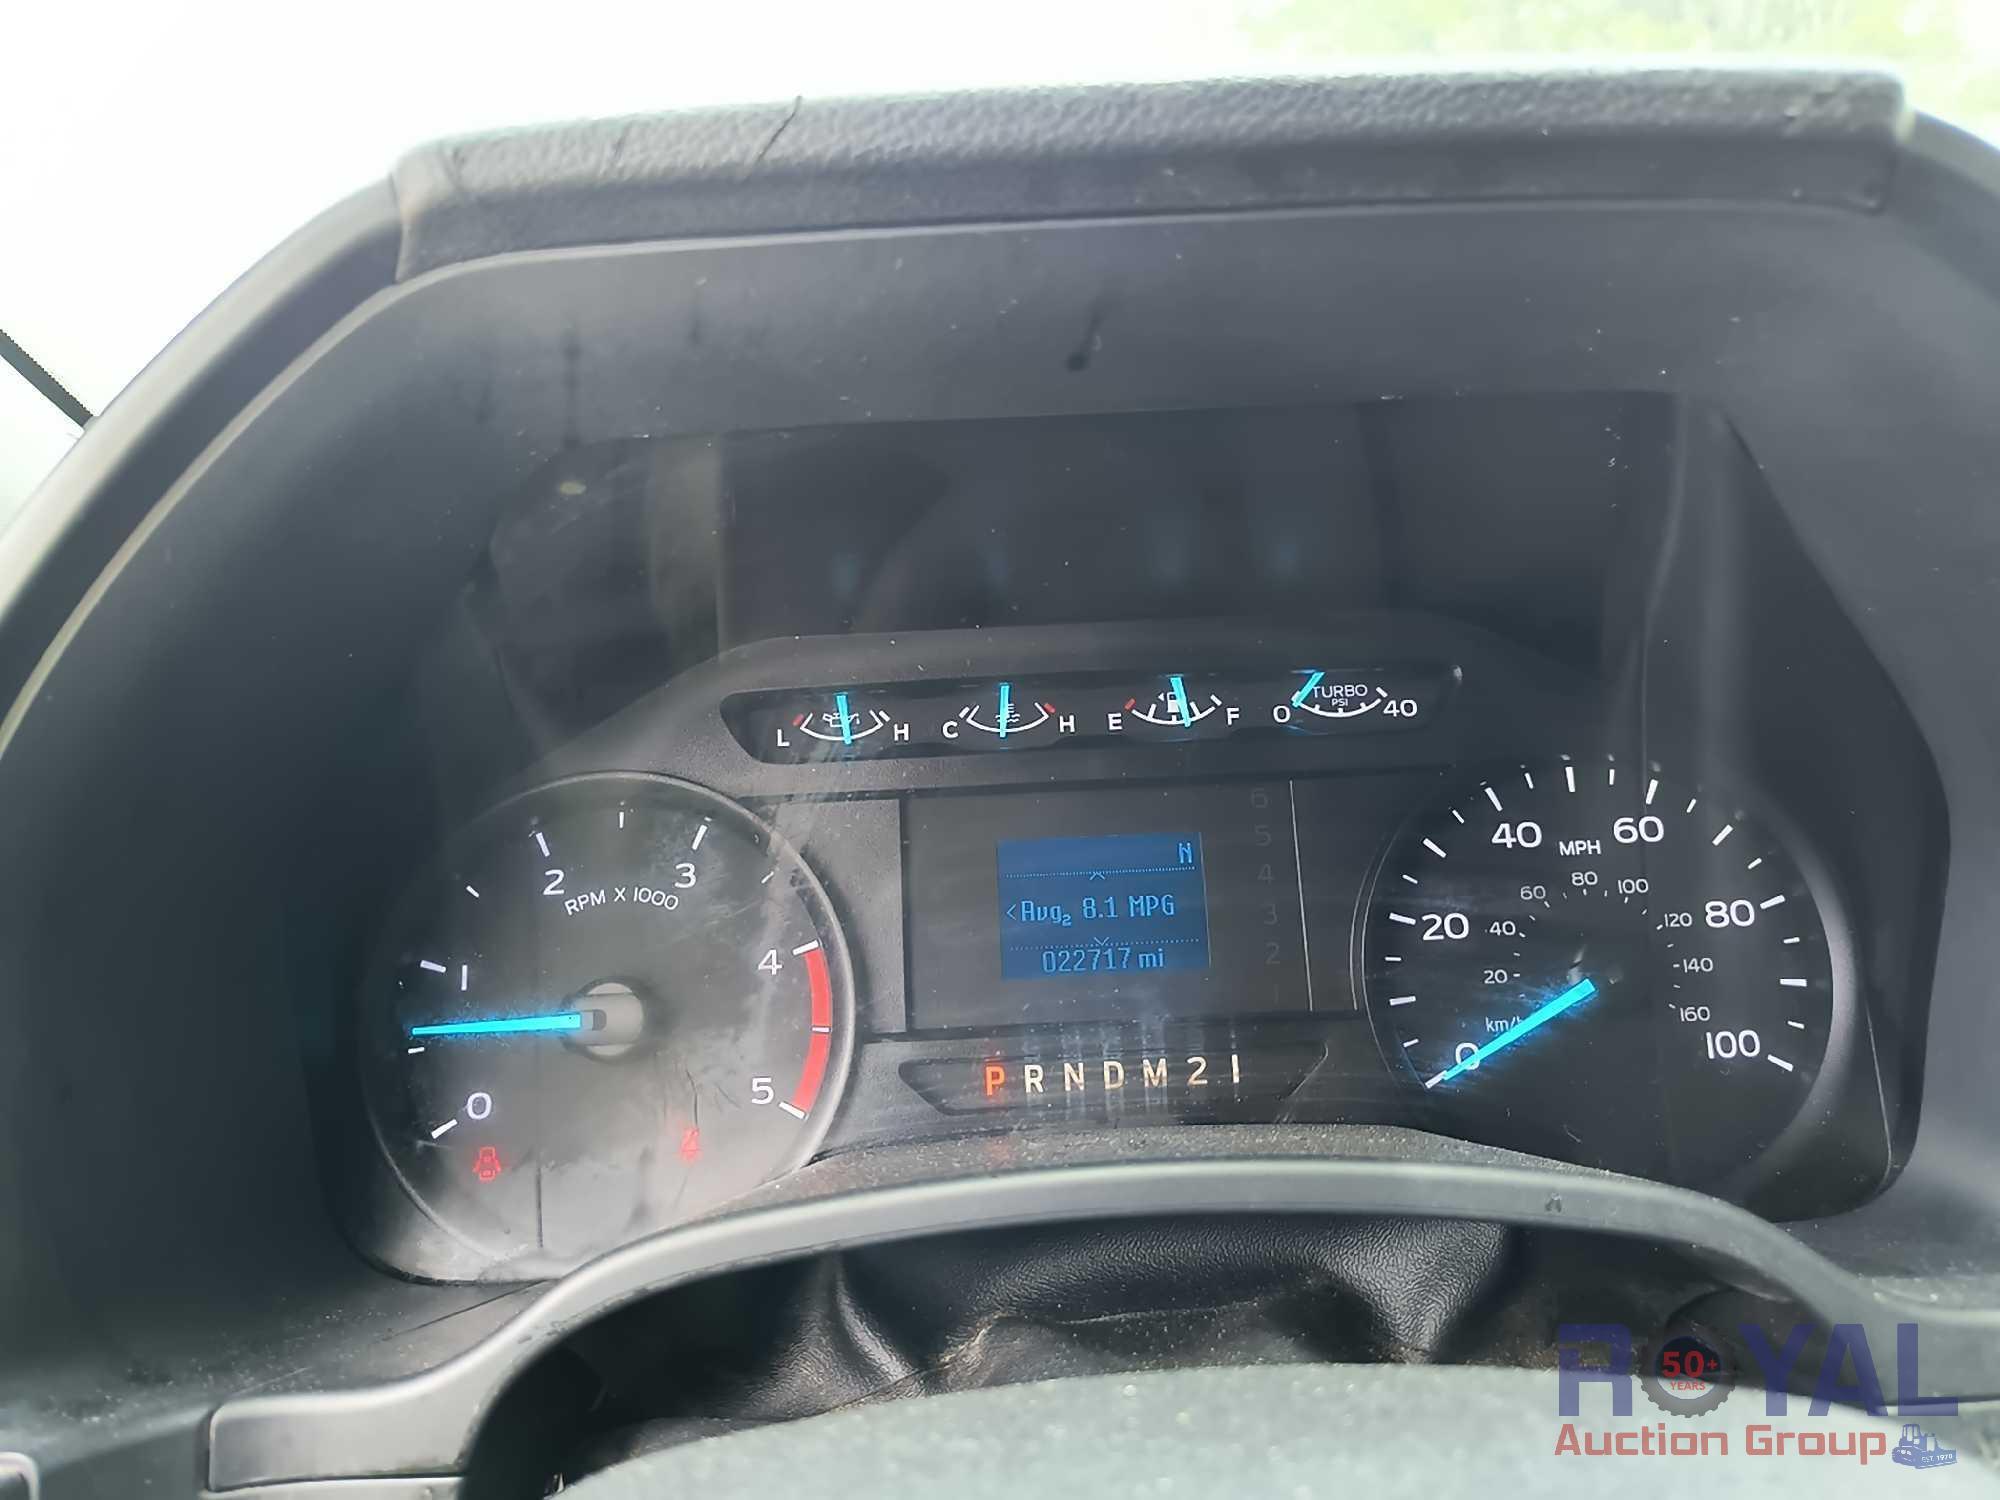 2019 Ford F-550 Gooseneck Hauler Flatbed Truck